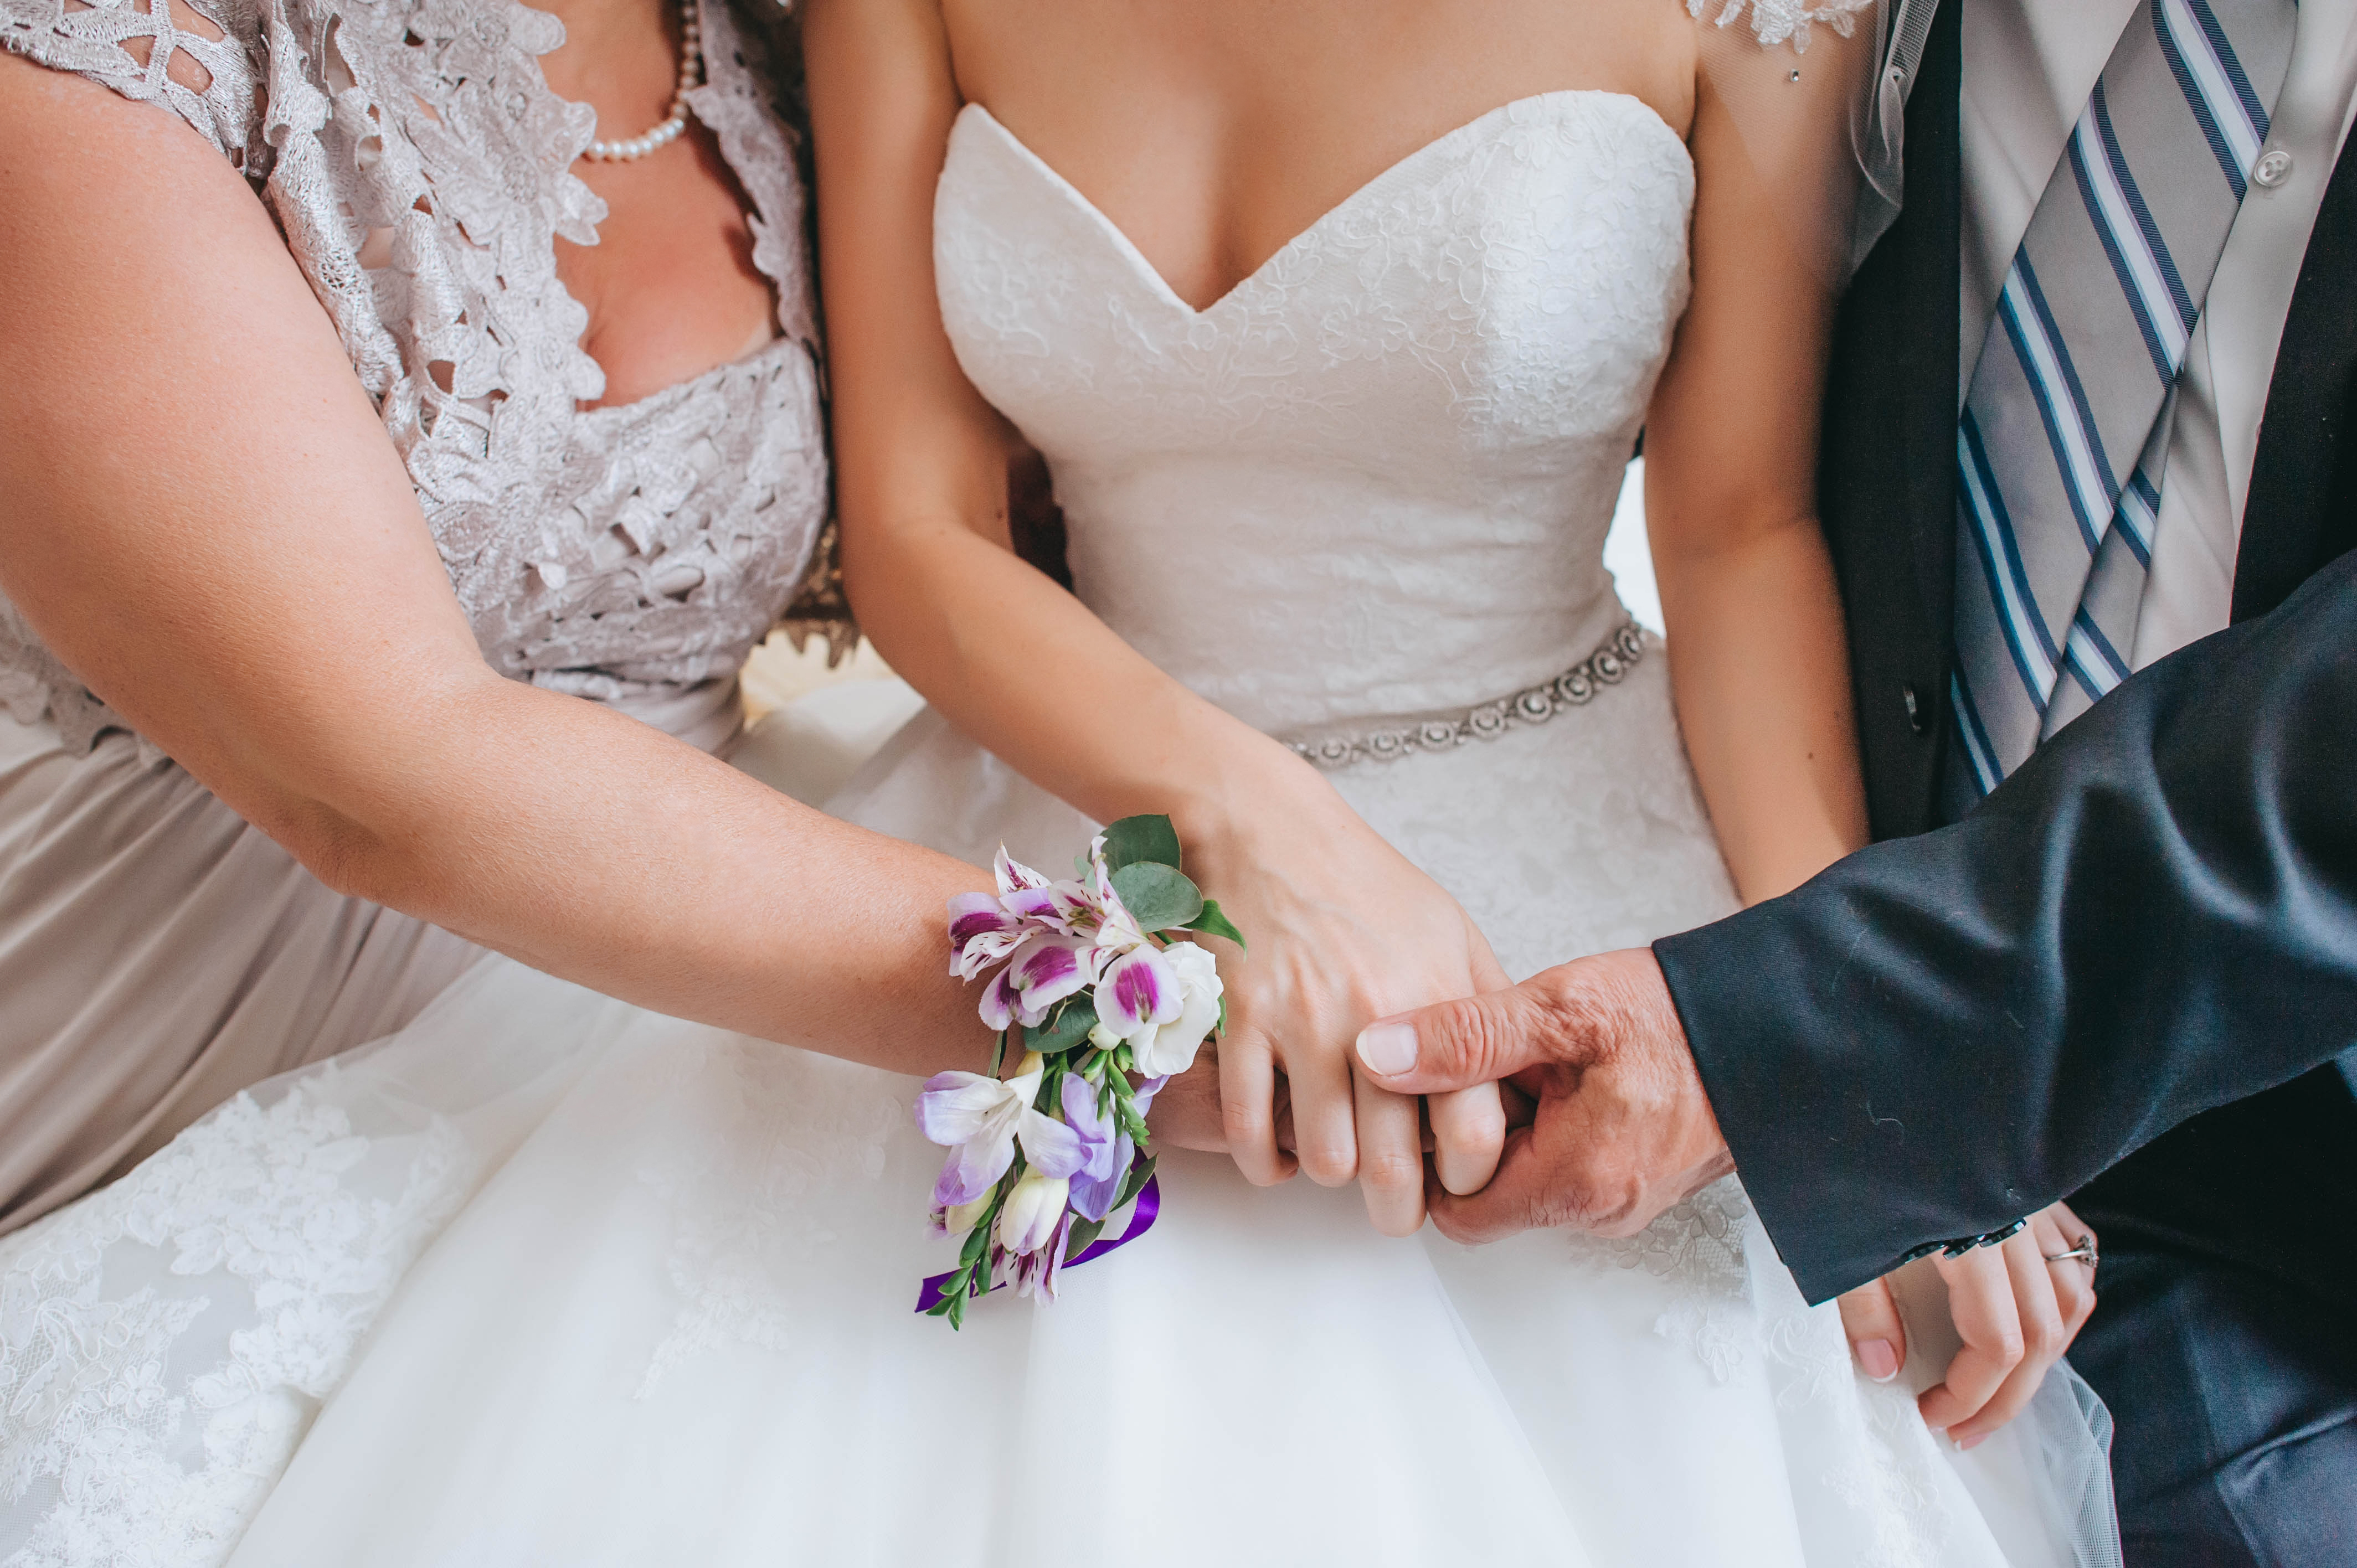 Eltern halten die Hand ihrer Tochter an deren Hochzeitstag | Quelle: Shutterstock